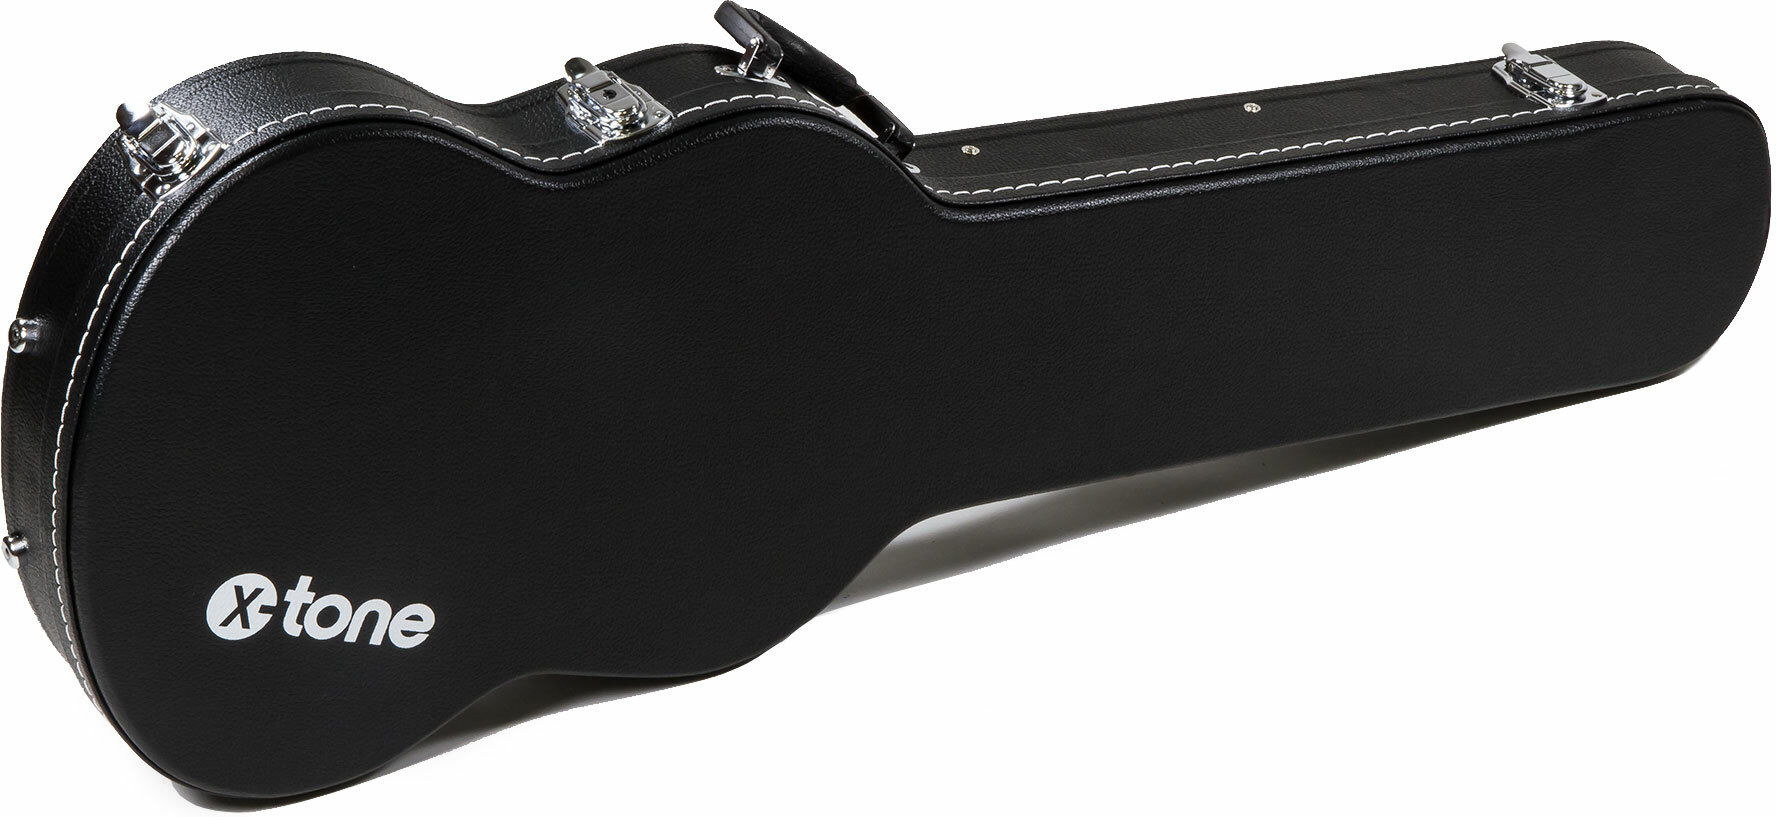 X-tone 1503 Standard Electrique Sg En Forme Black - Etui Guitare Électrique - Main picture